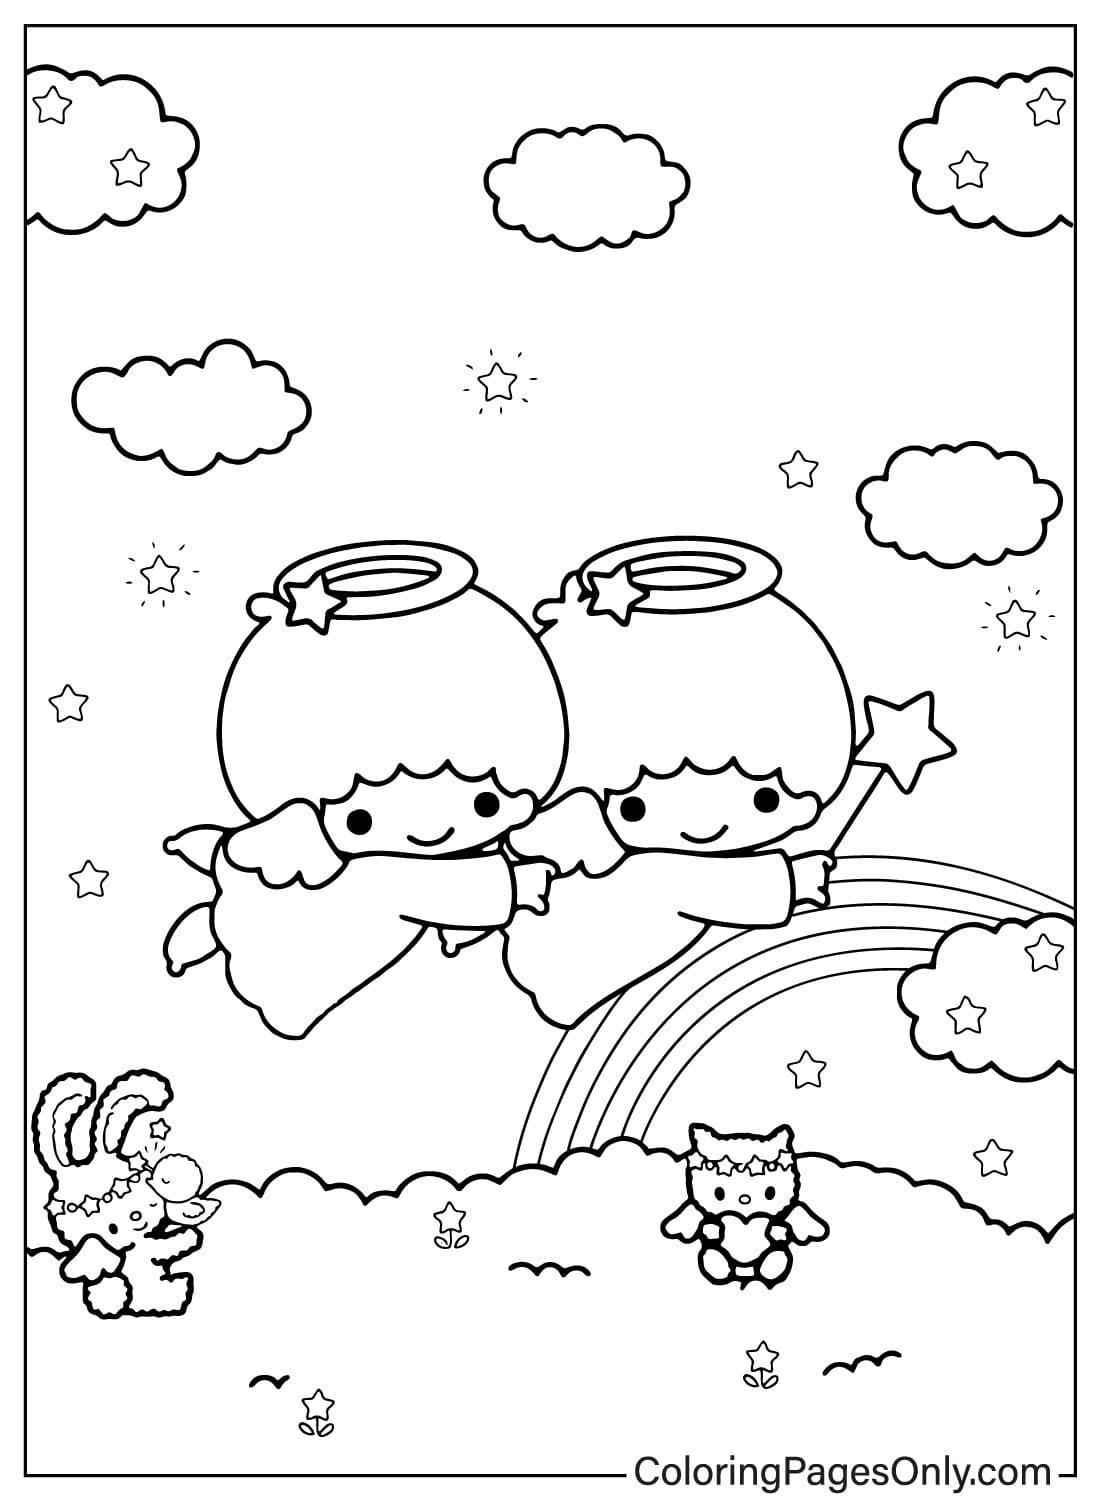 Pagina da colorare di Lala e Kiki gratuita da Little Twin Stars